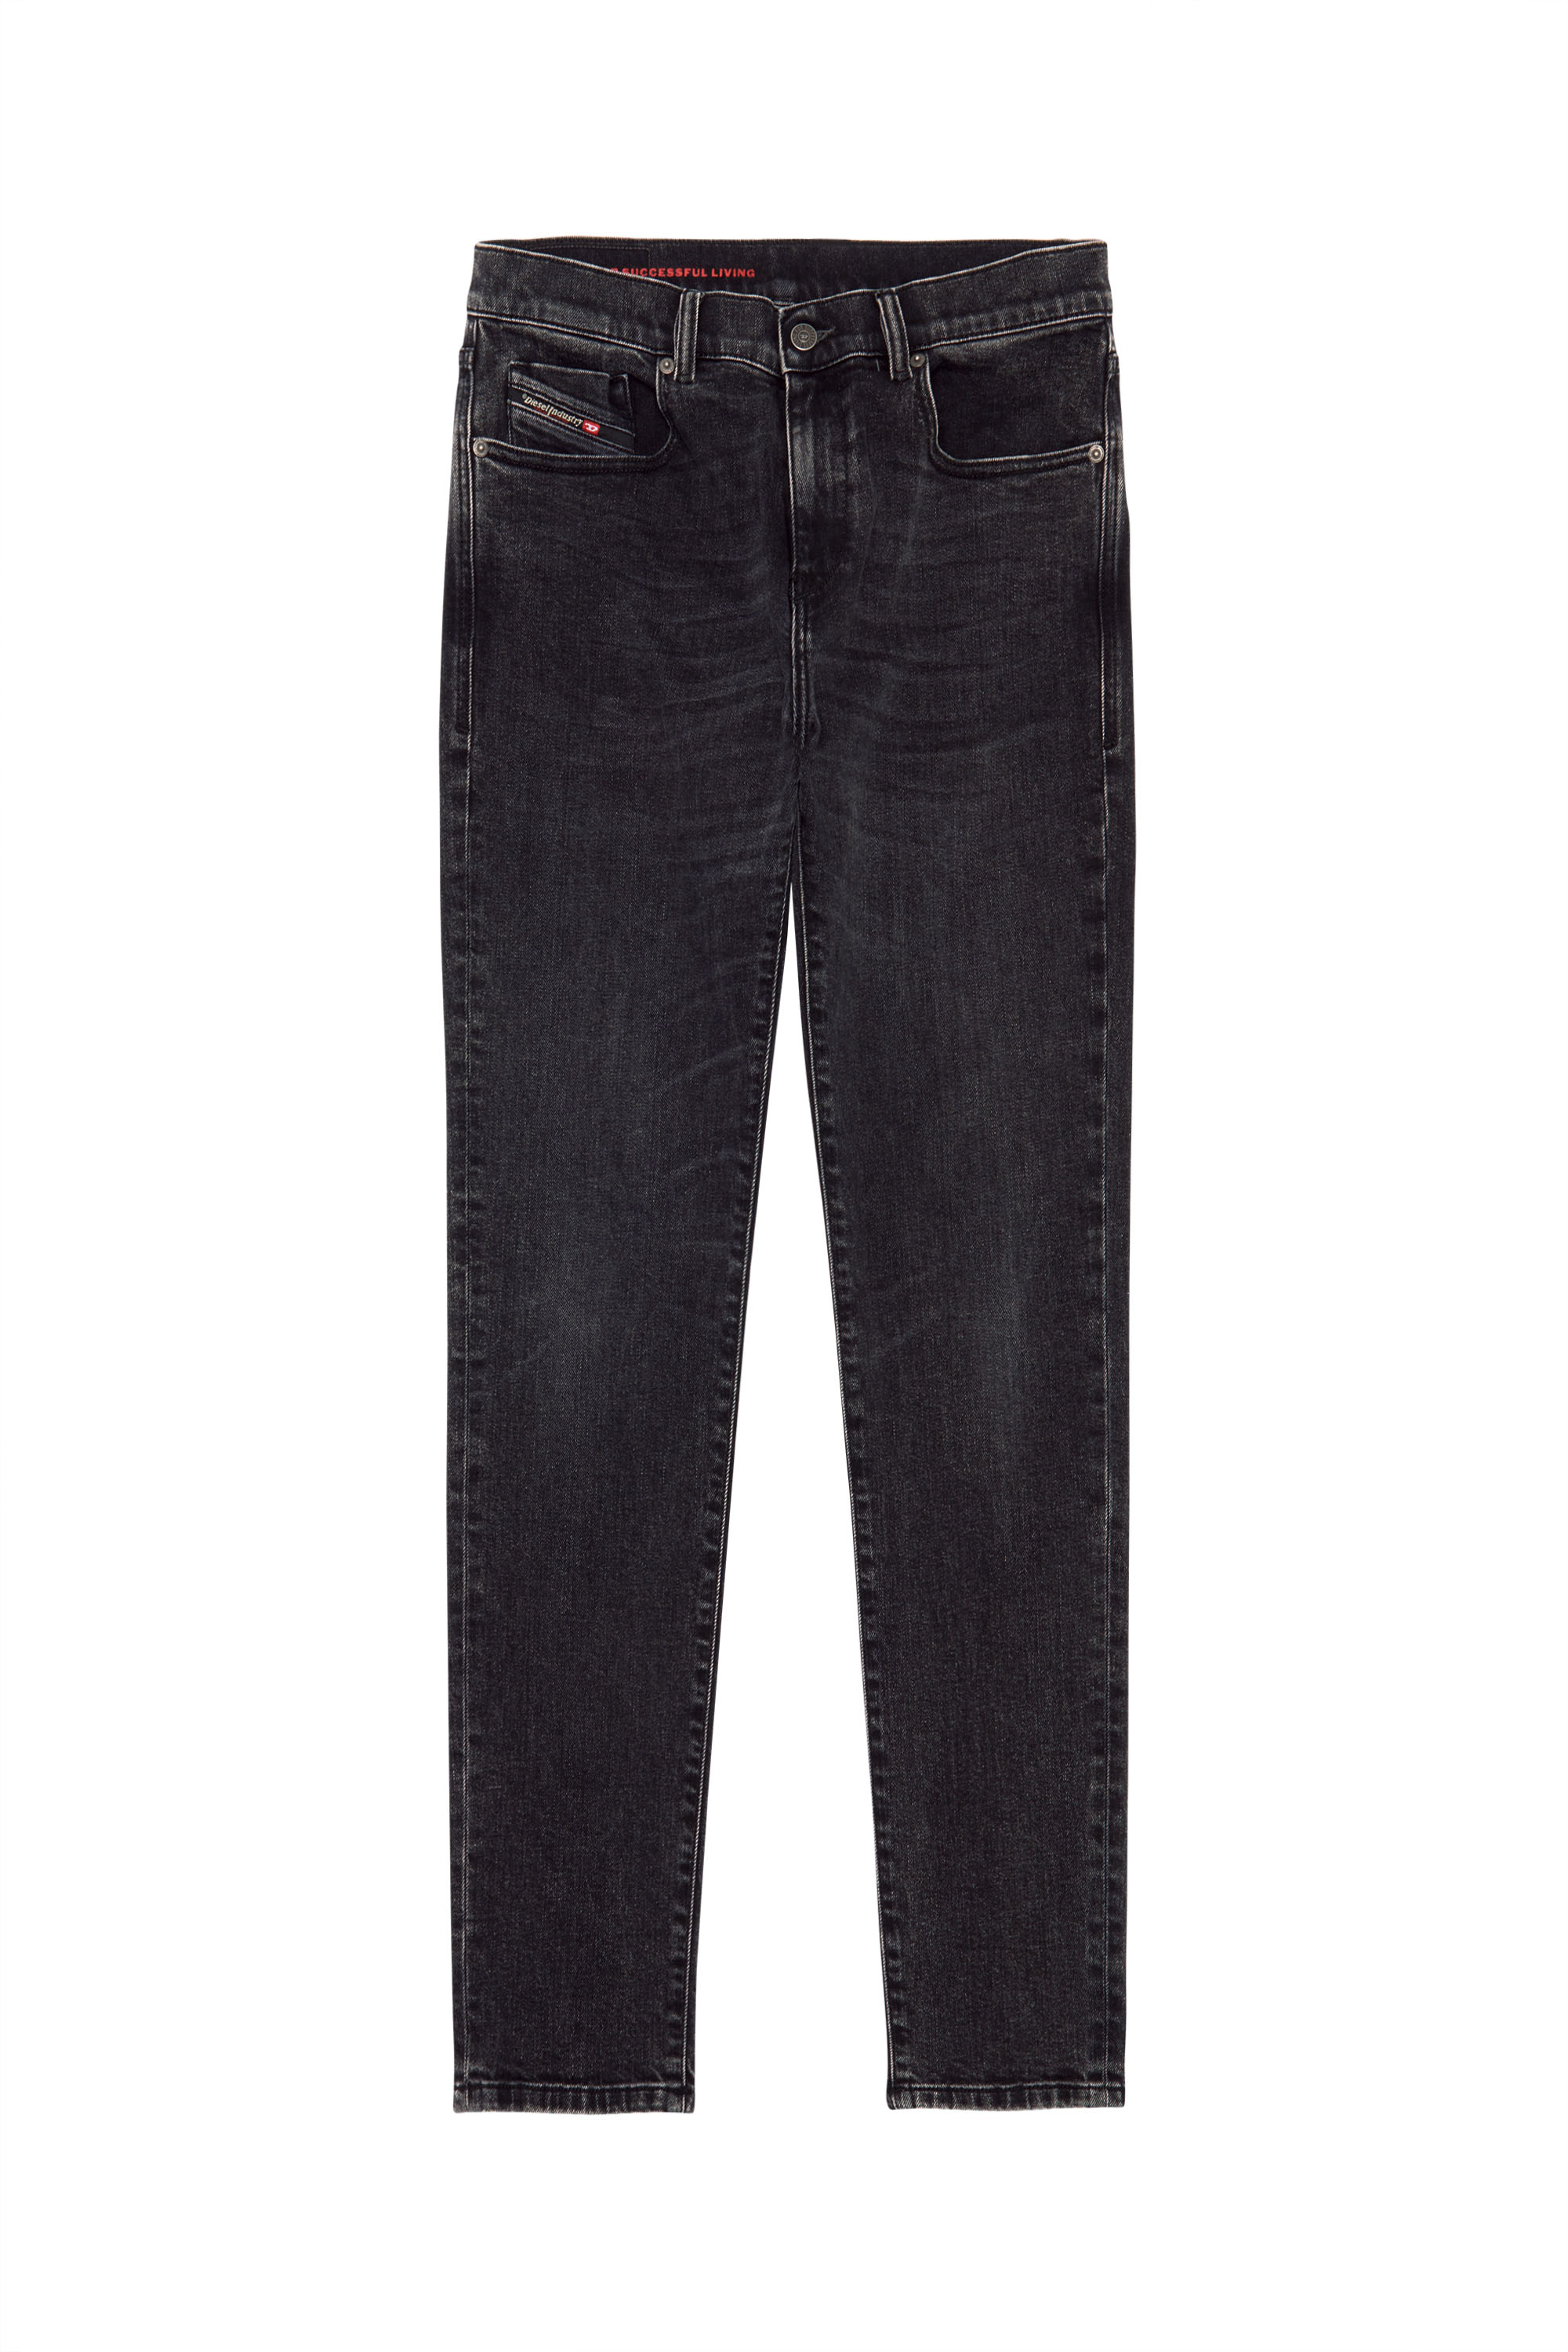 2019 D-Strukt 09B83 Slim Jeans, Black/Dark grey